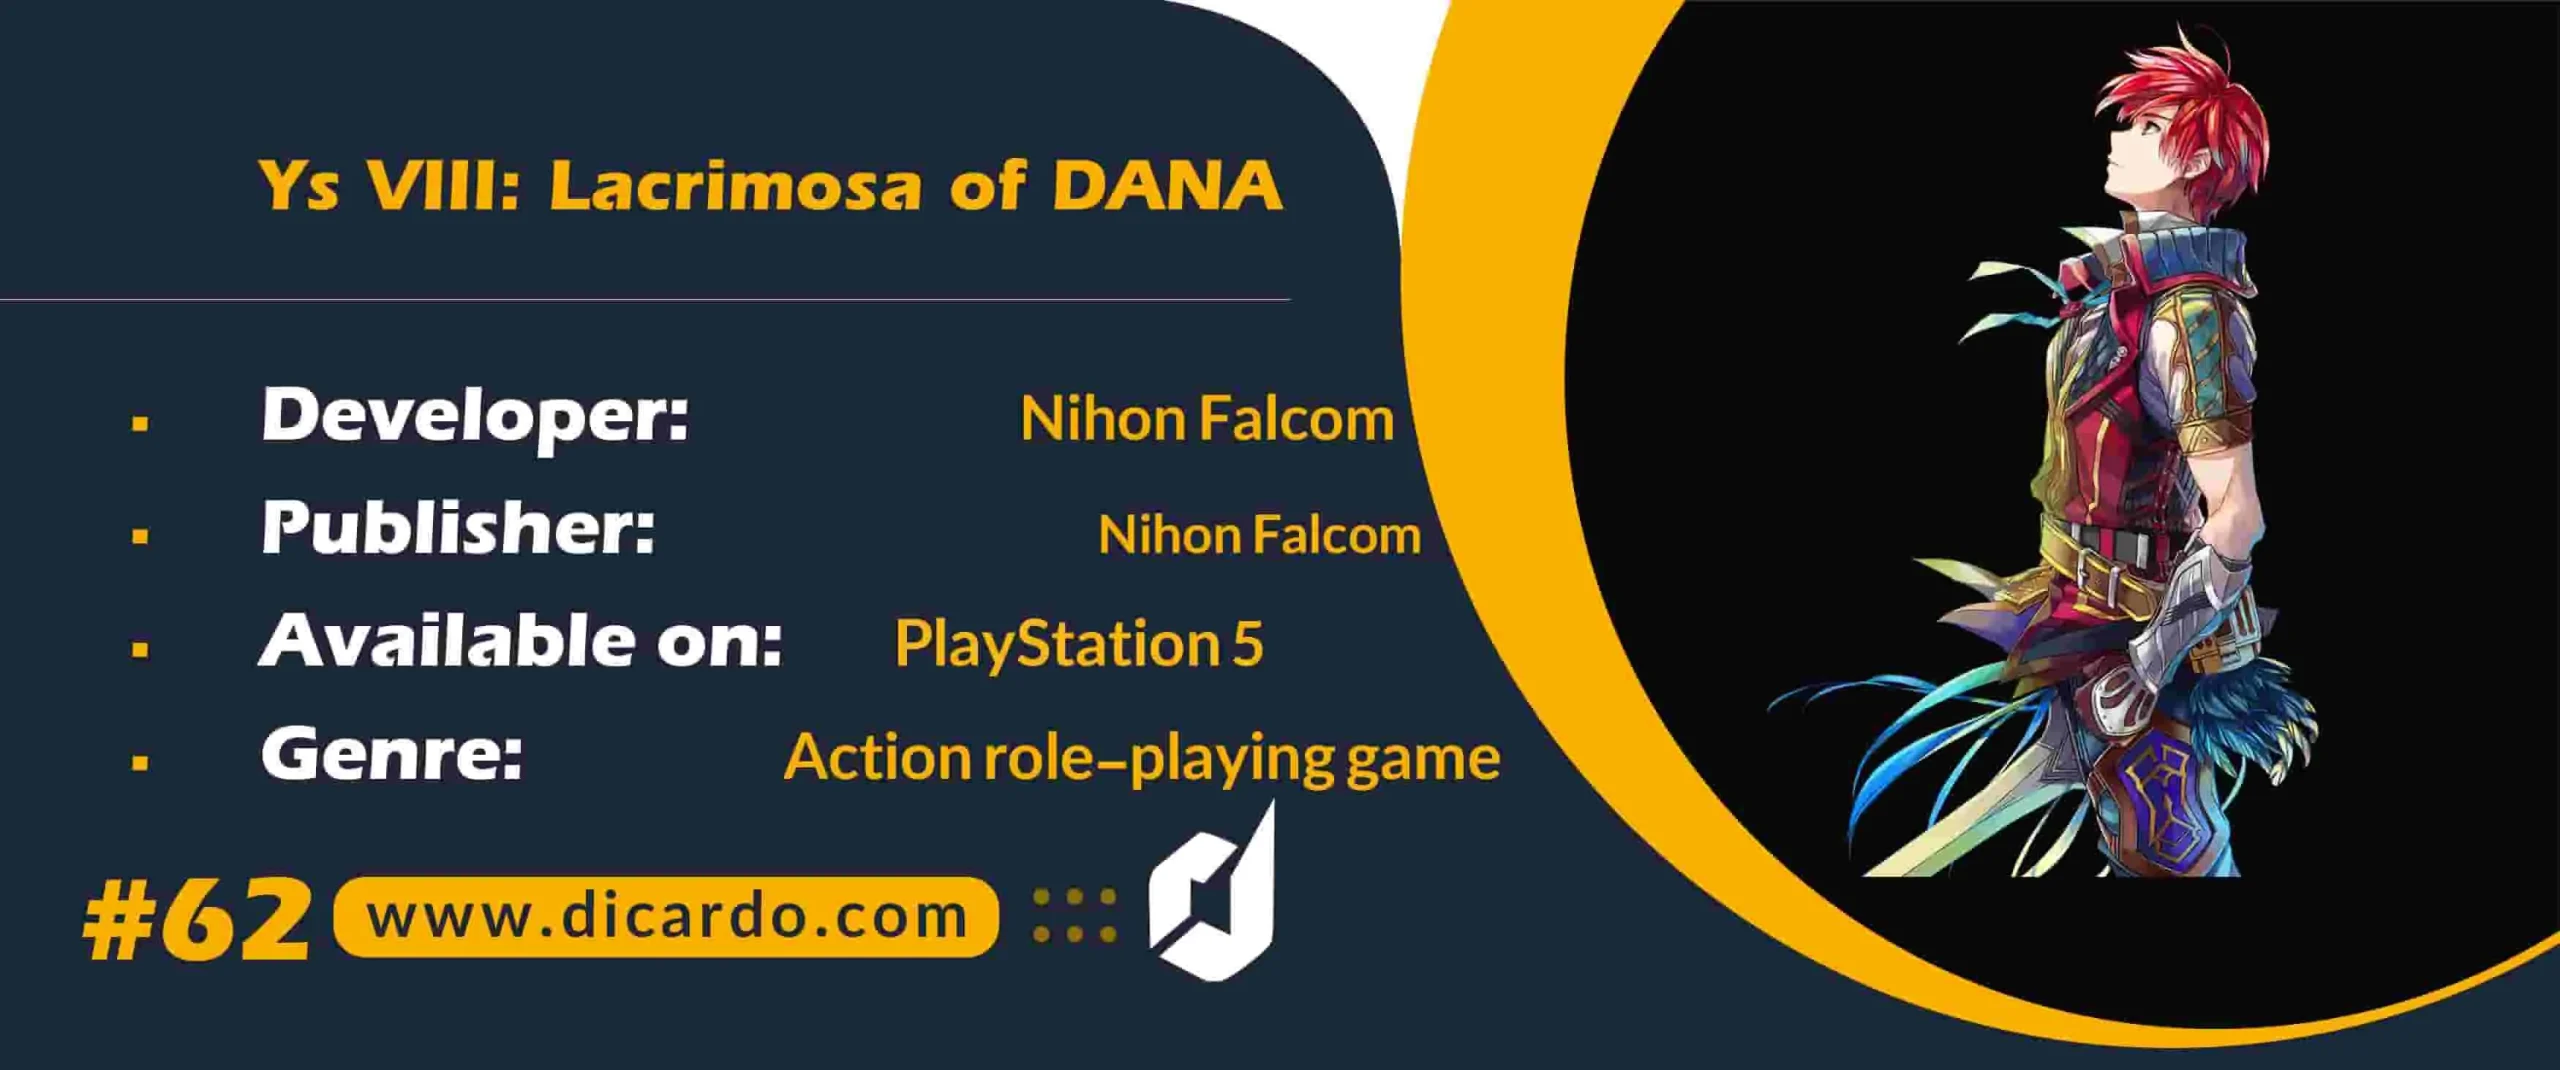 #62 وای اس 8 لاکریموسا آو دانا Ys VIII: Lacrimosa of DANA از دیگر بازیهای برتر پلی استیشن 5